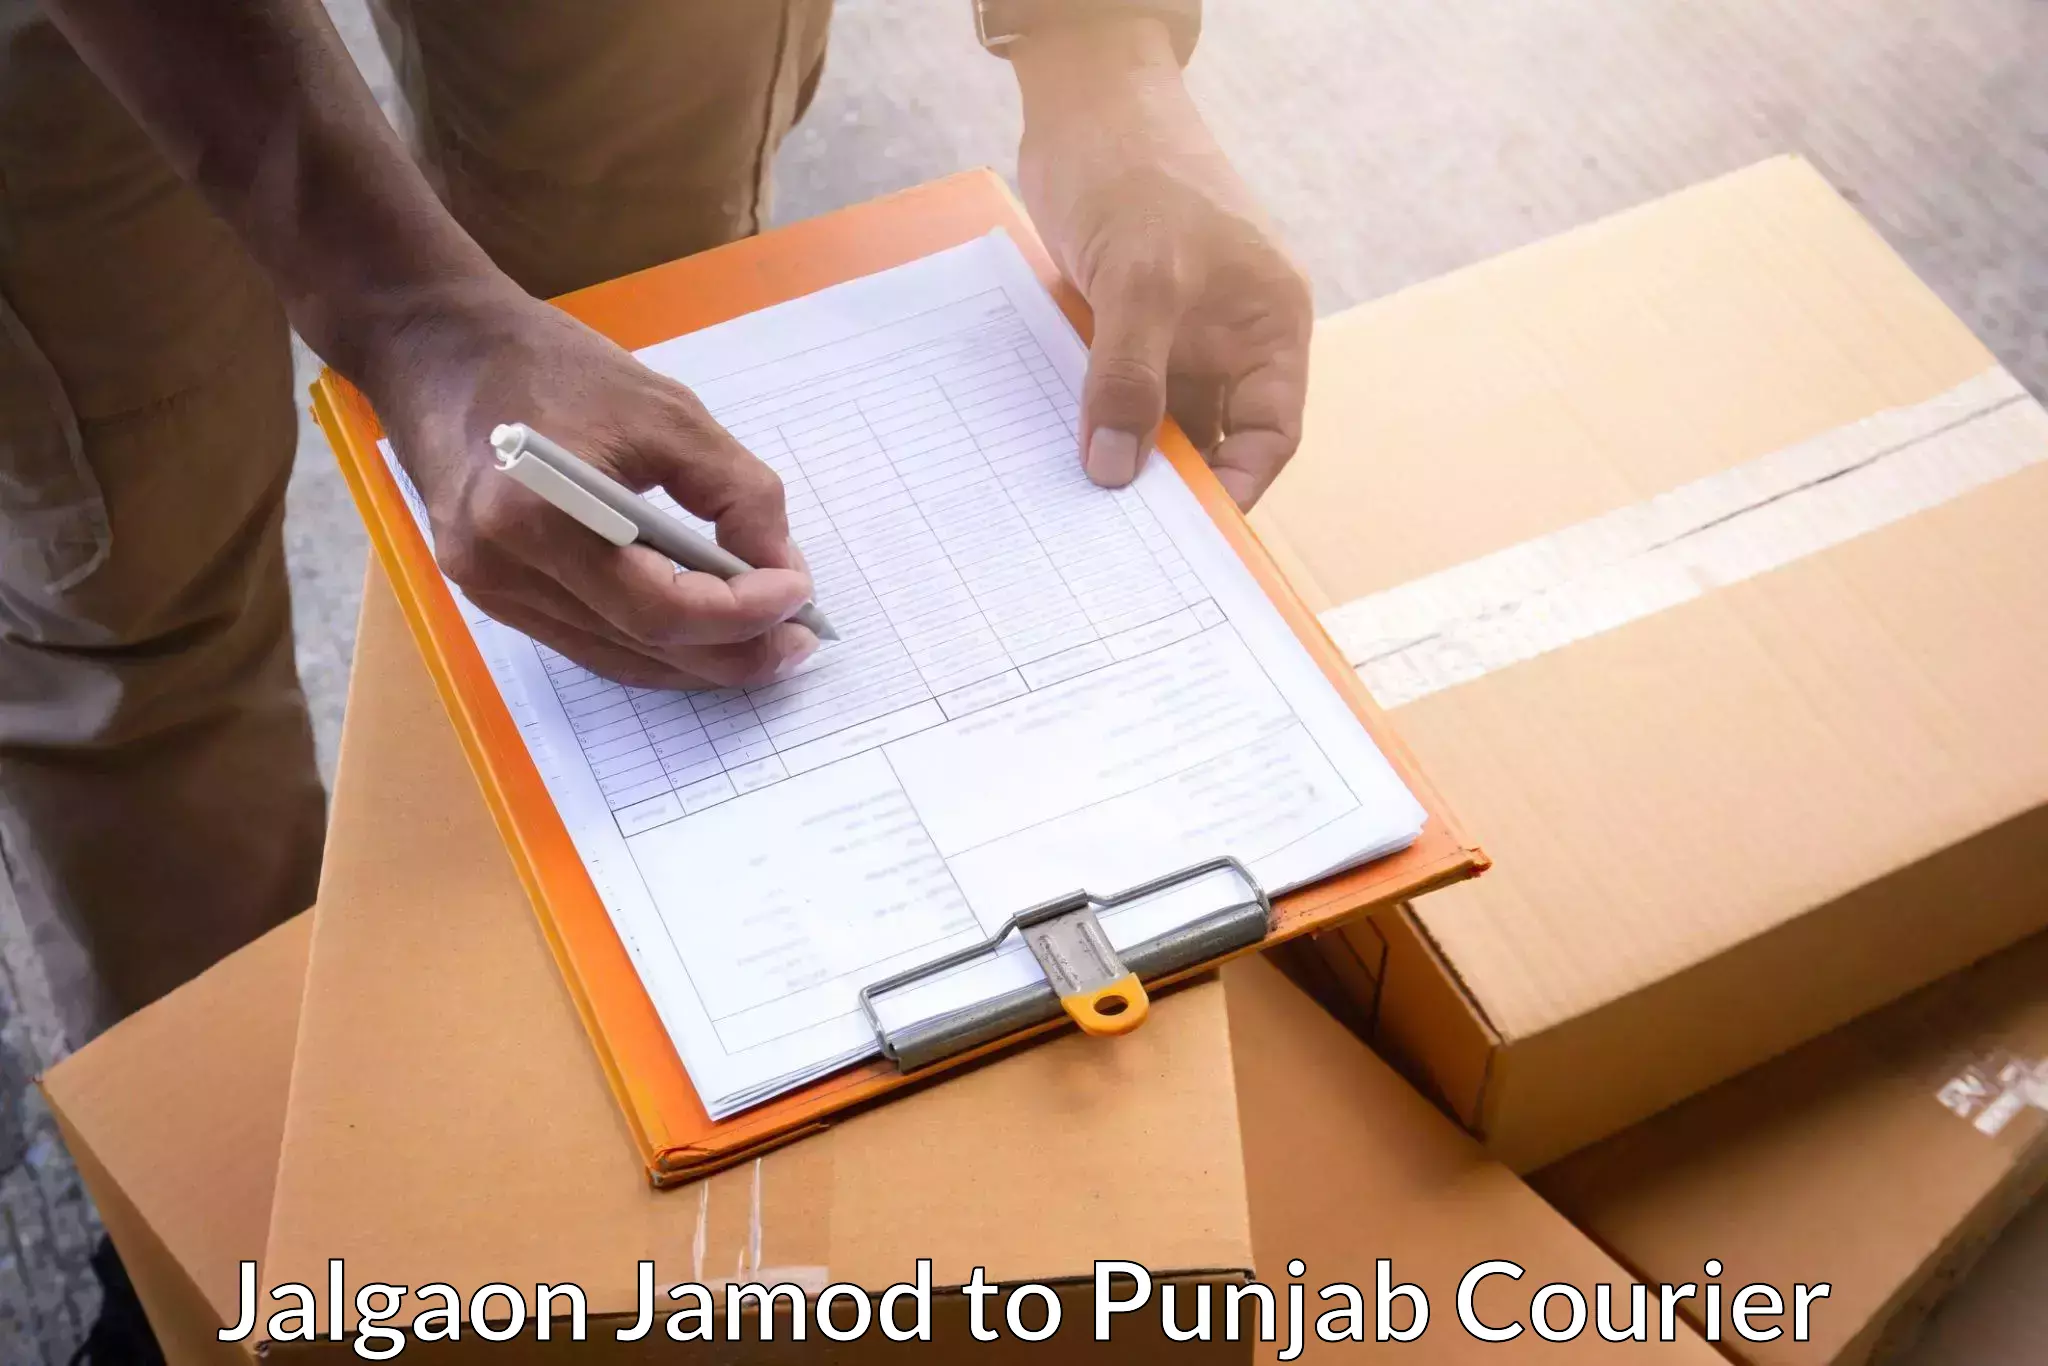 Bulk shipment Jalgaon Jamod to Punjab